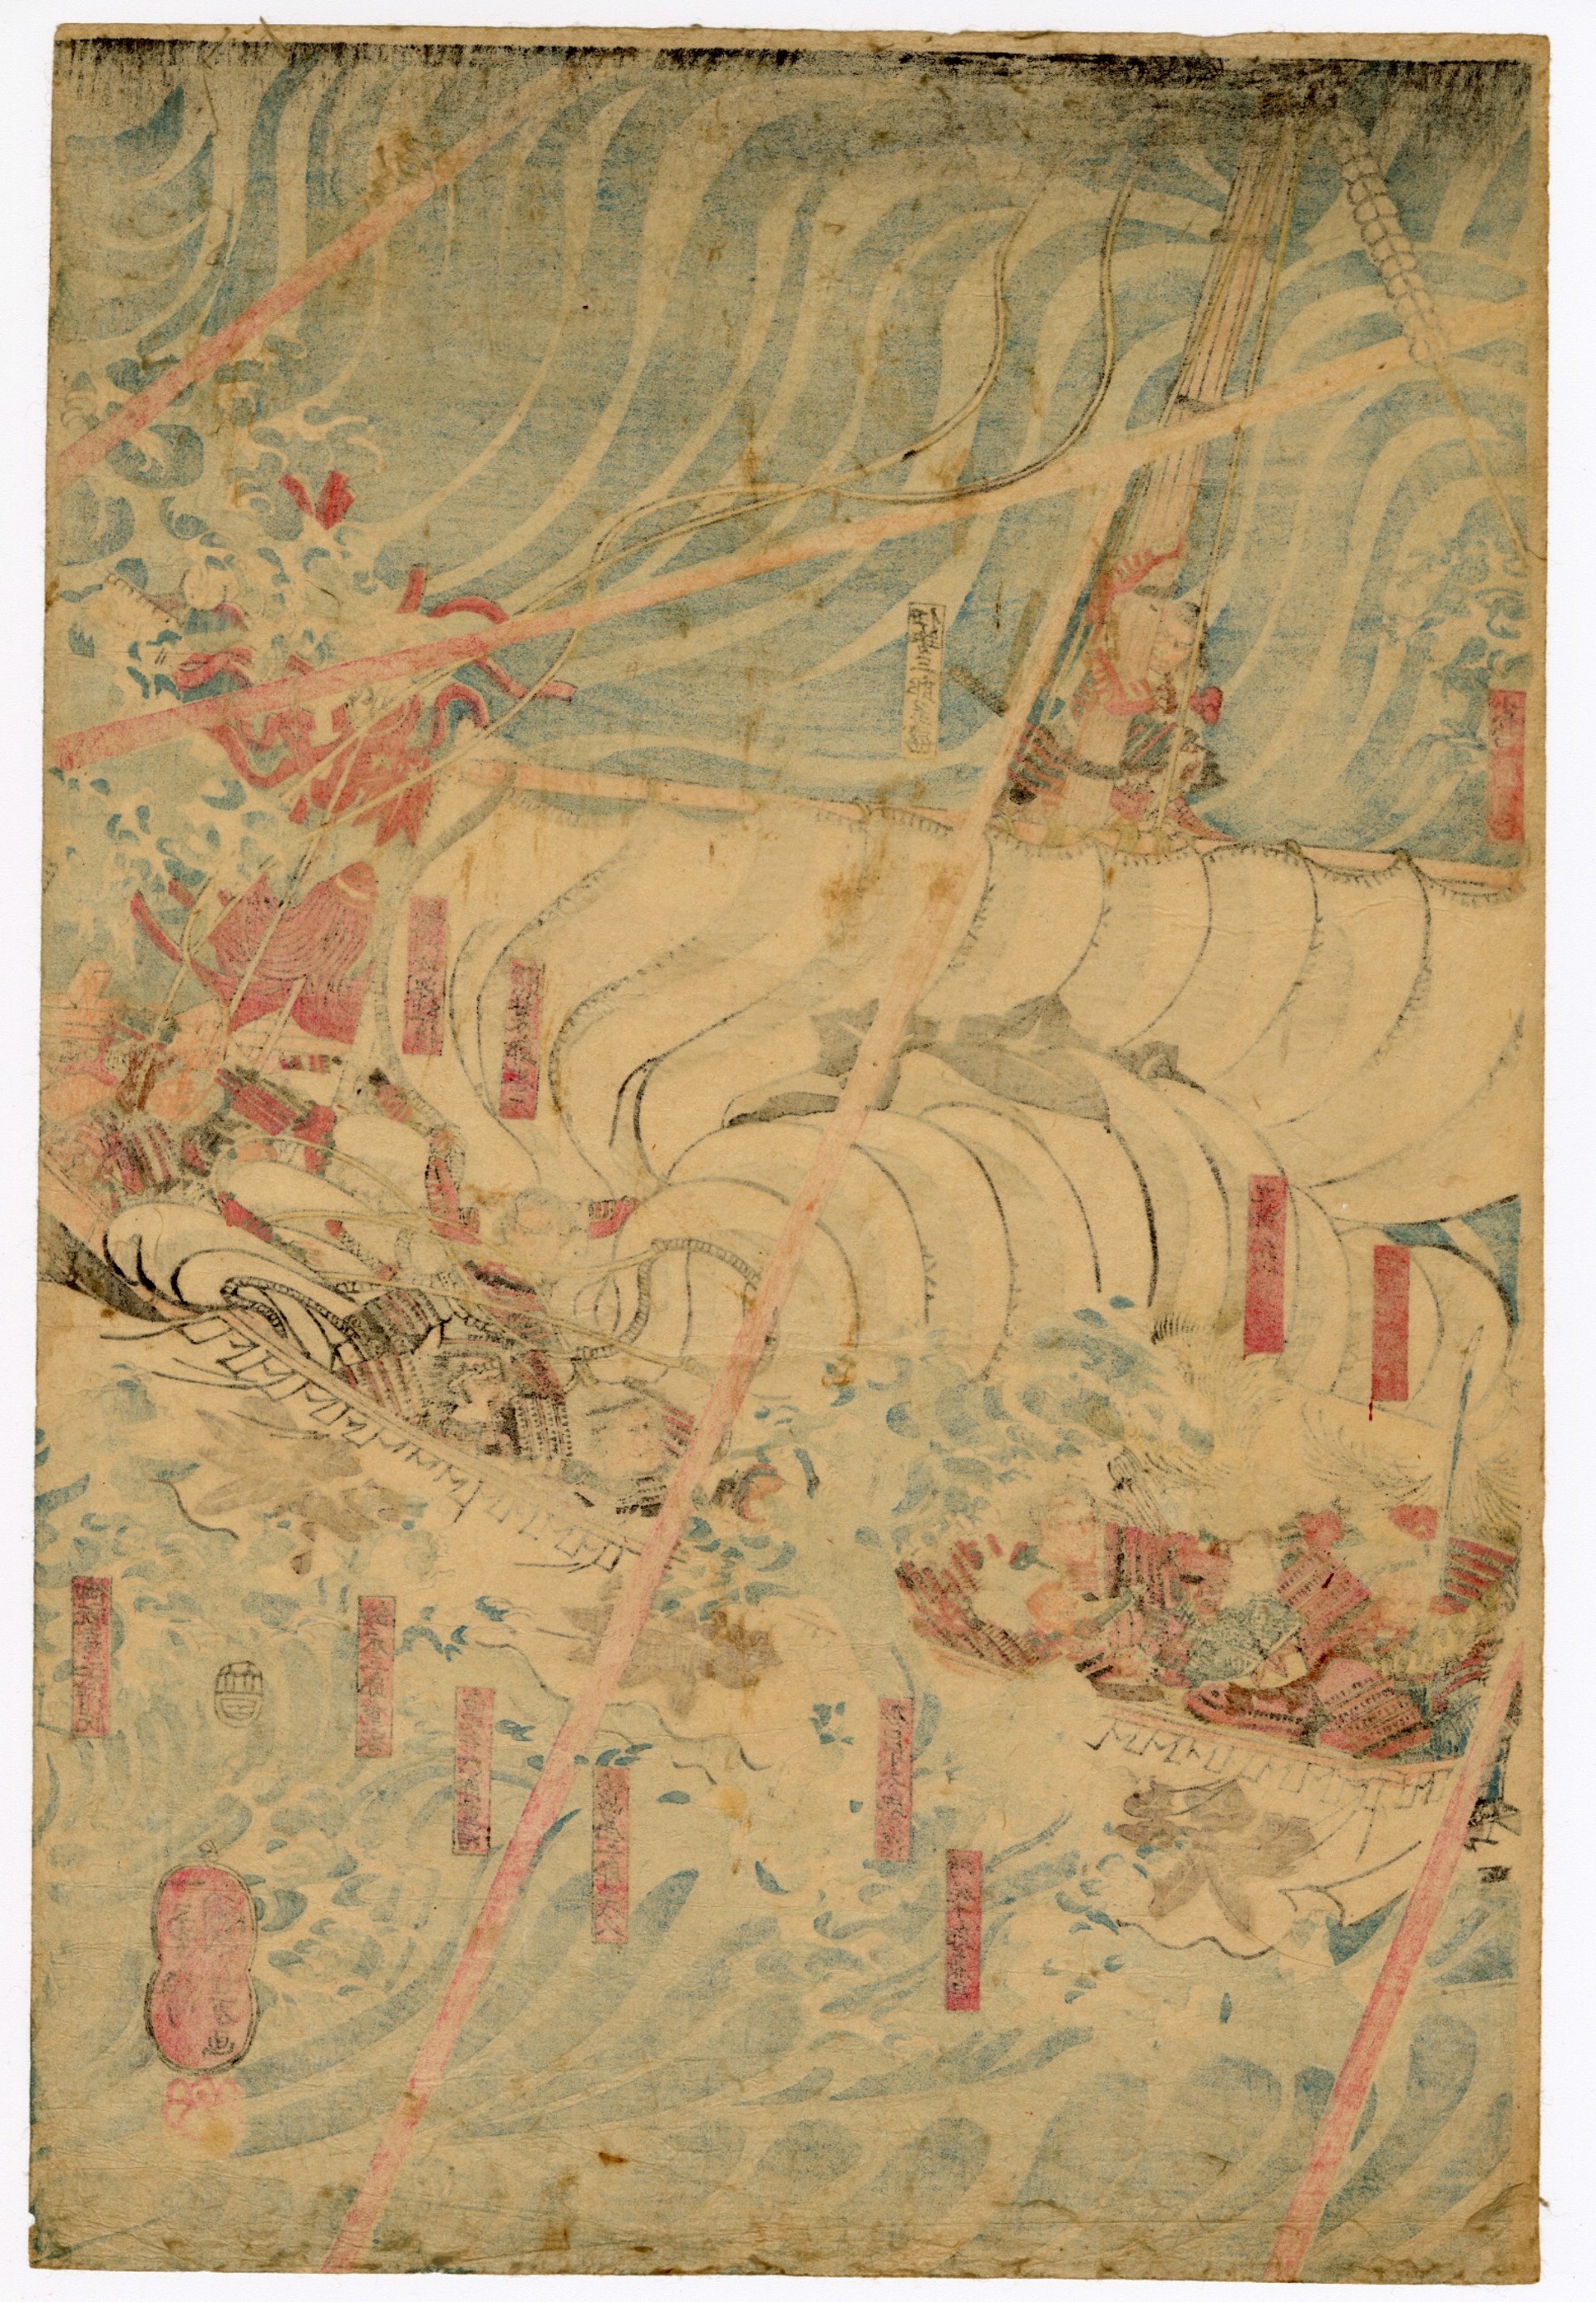 TheGhosts of the Heike Appear at Daimotsu Bay Settshu by Kuniyoshi